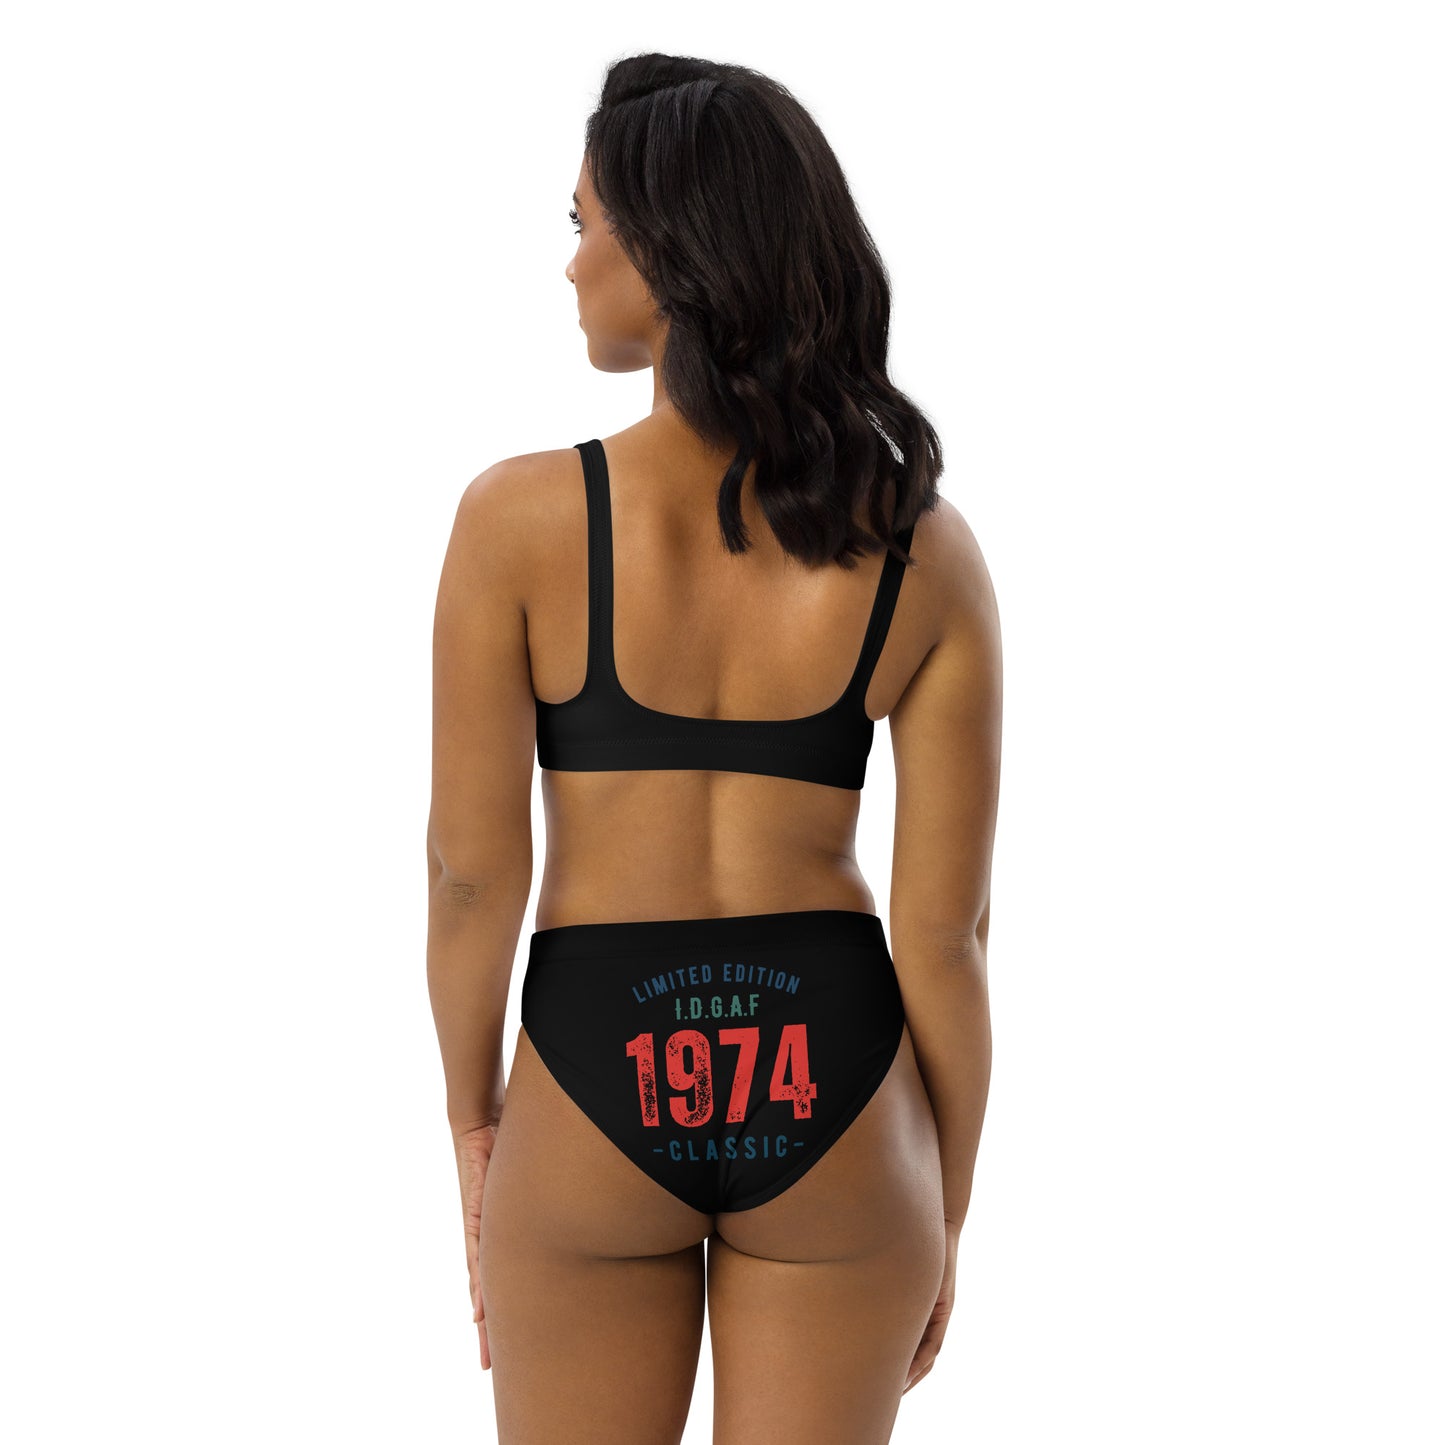 High-Waisted Customizable IDGAF Bikini